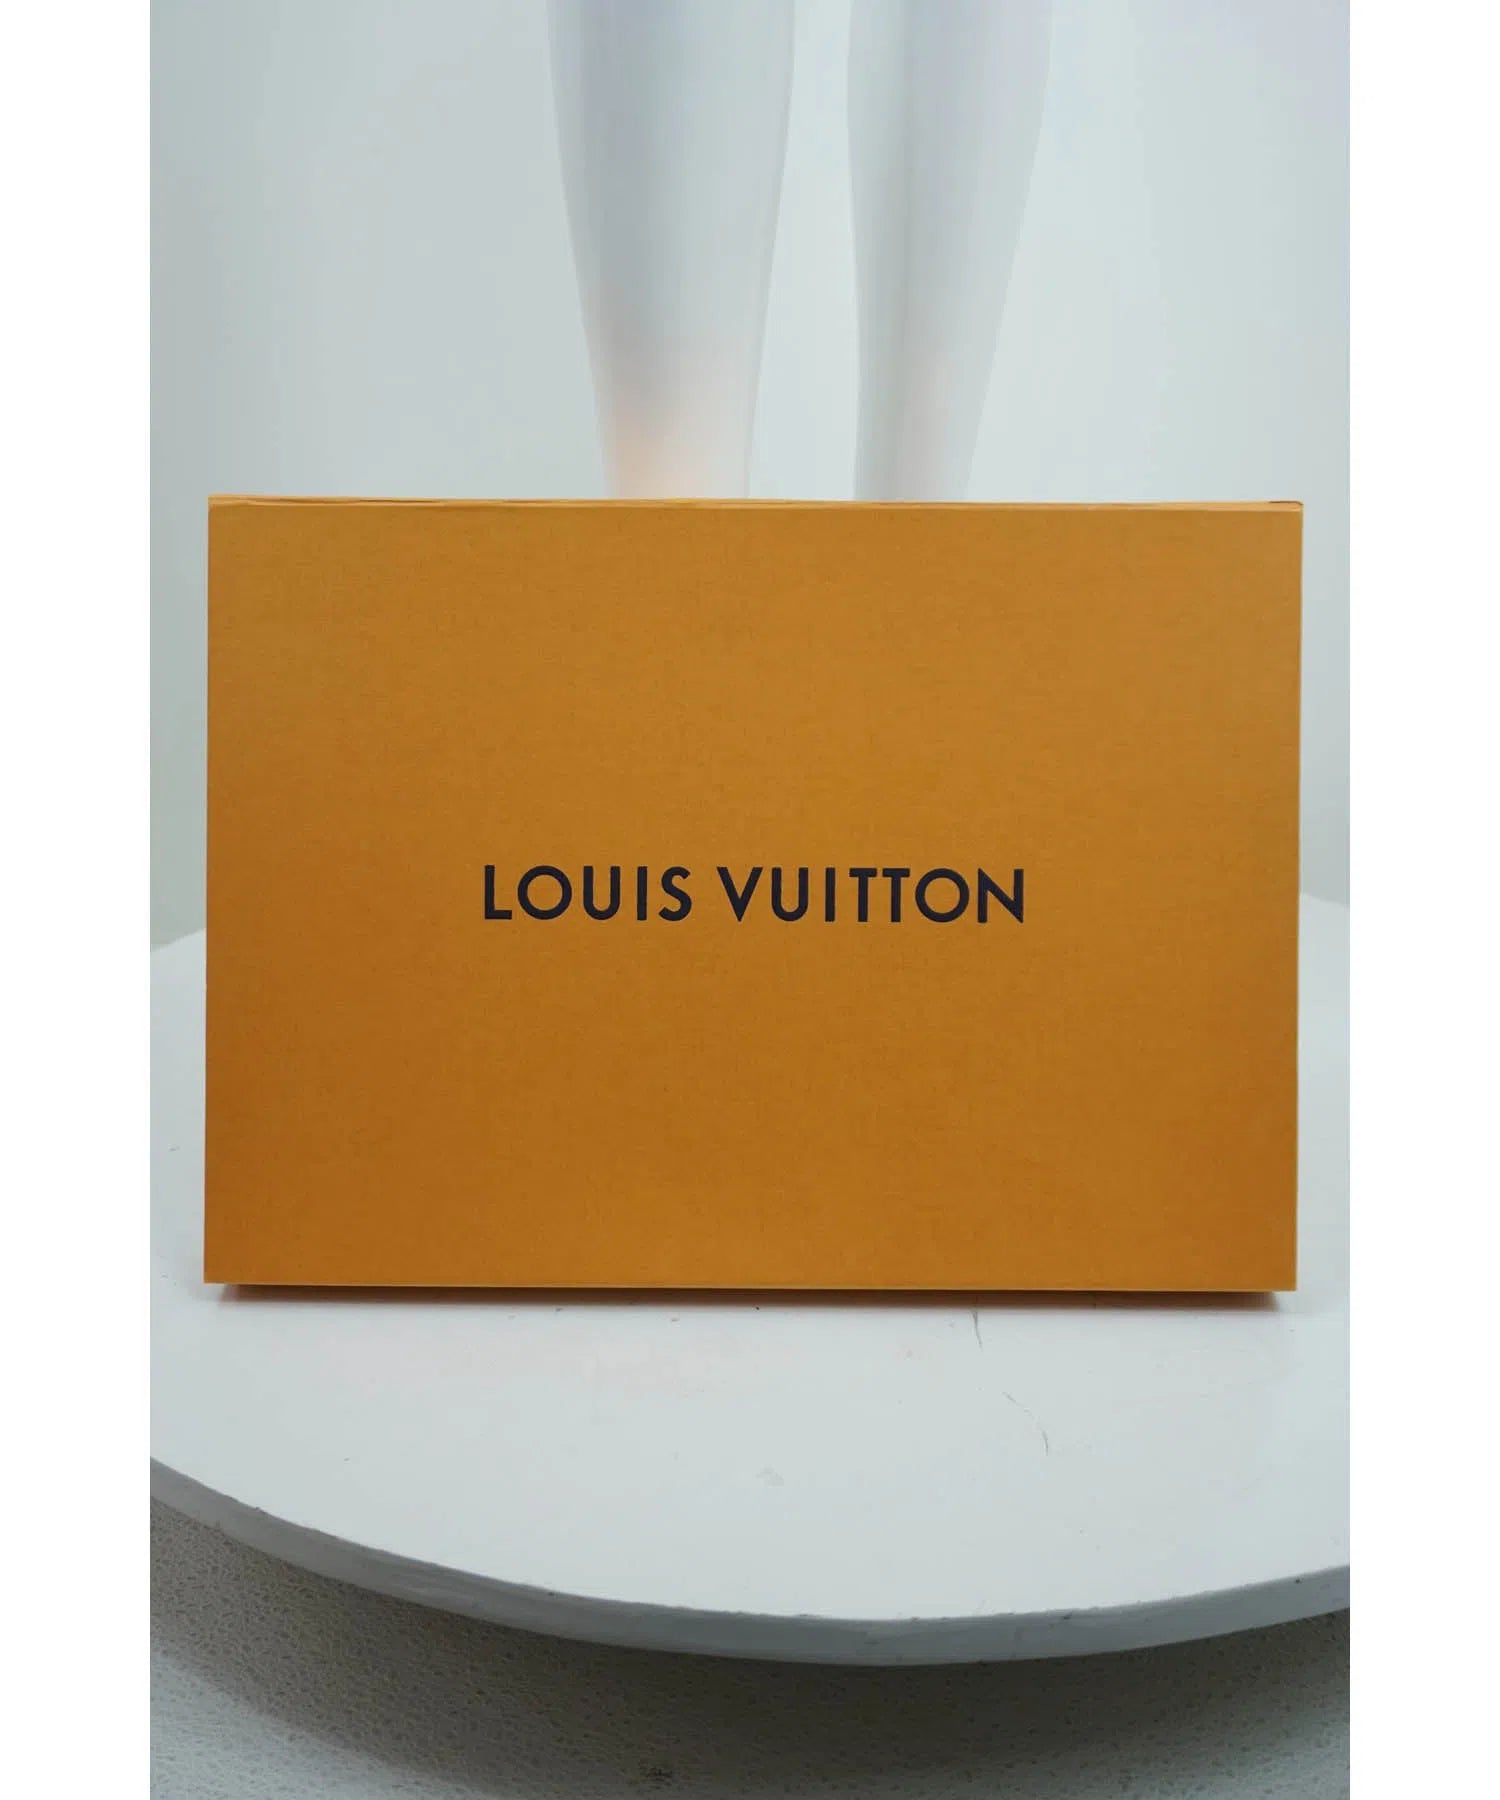 Louis Vuitton Virgil Abloh Tie Dye Monogram Stole w/Box 2019